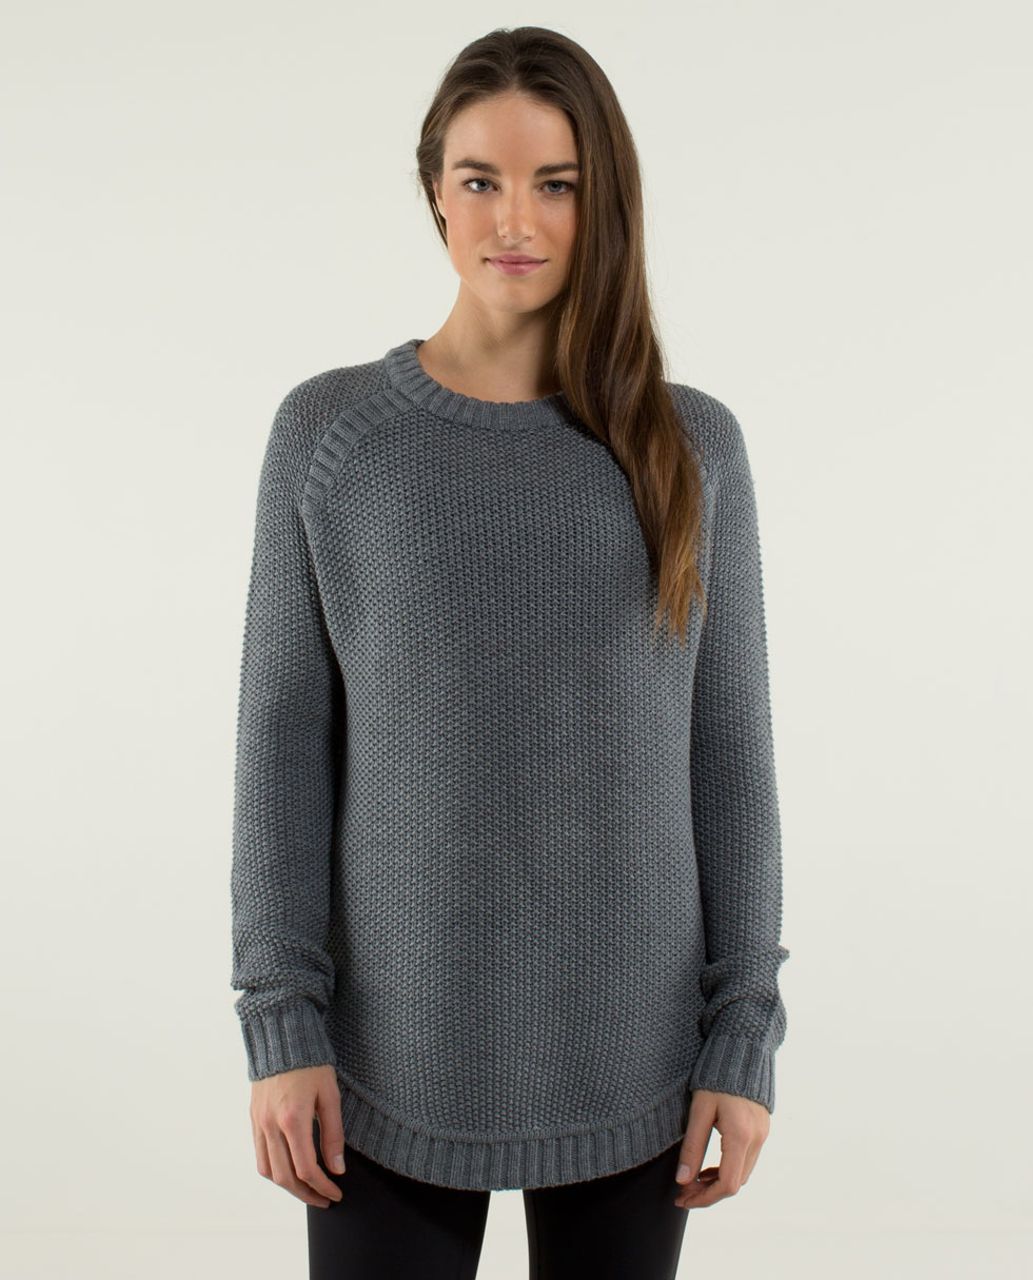 Lululemon Passage Sweater - Heathered Medium Grey